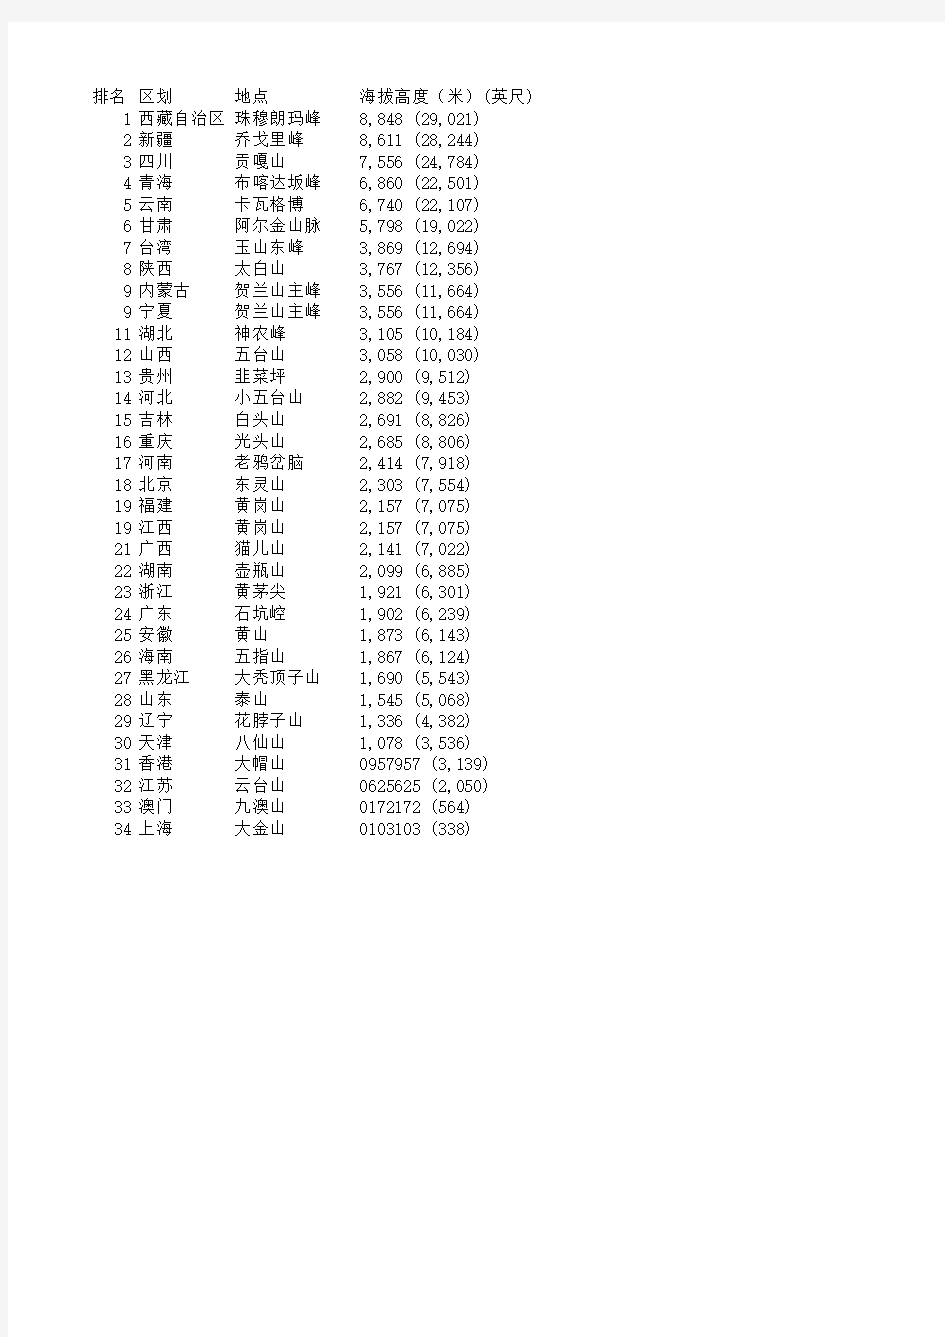 列表-中国各省级行政区最高点